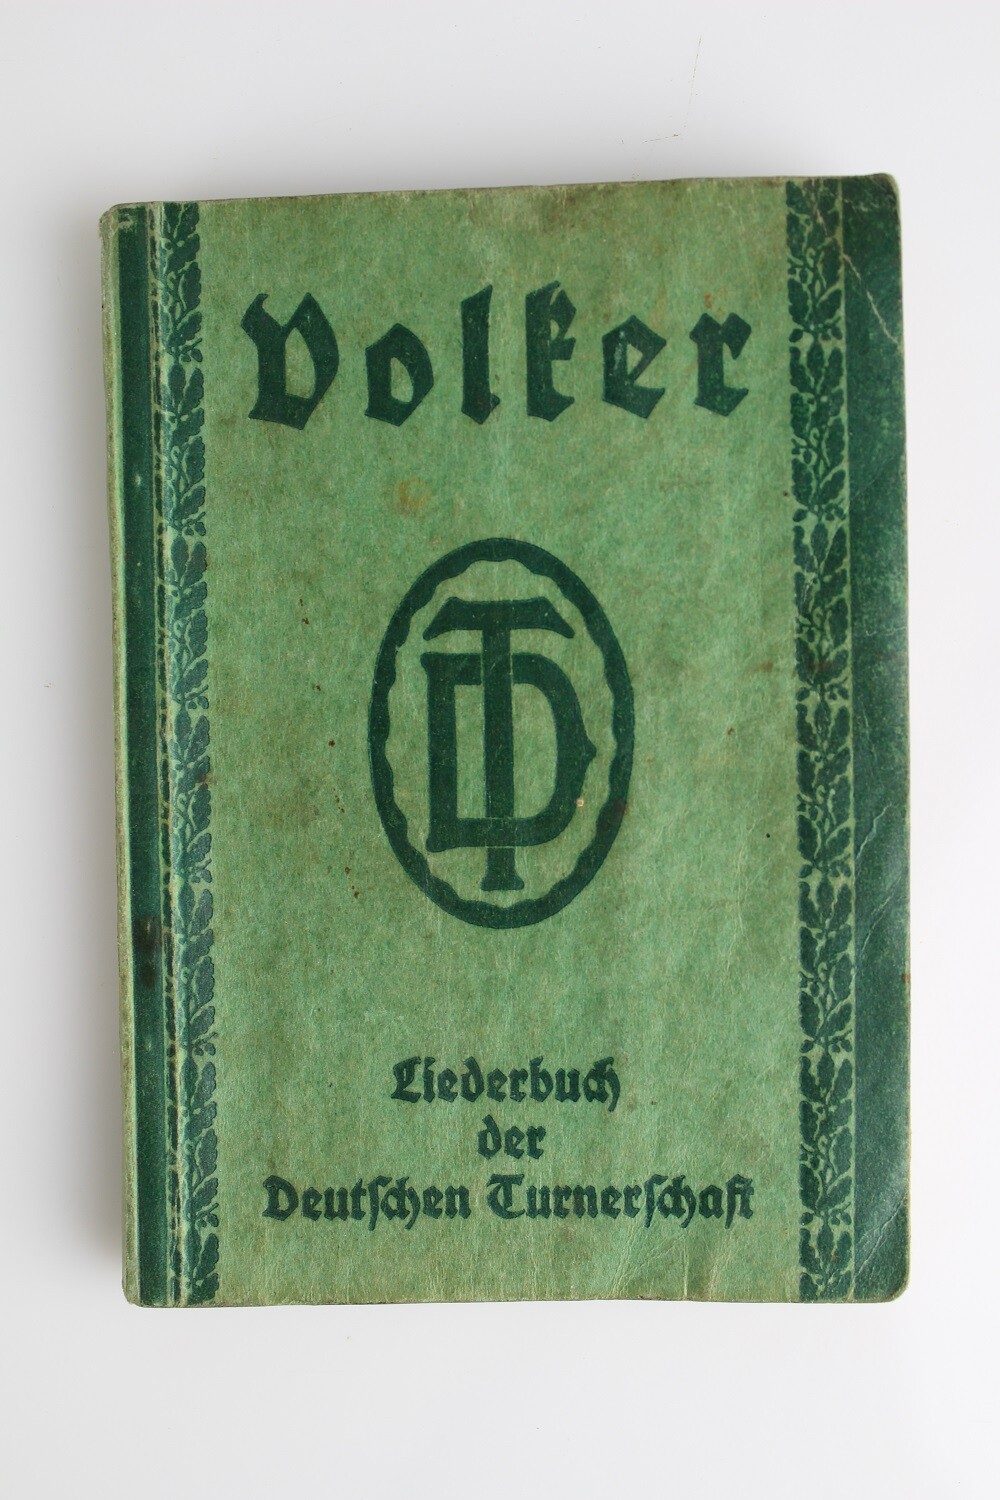 Liederbuch der Deutschen Turnerschaft „Volker“ (Museum Baruther Glashütte CC BY-NC-SA)